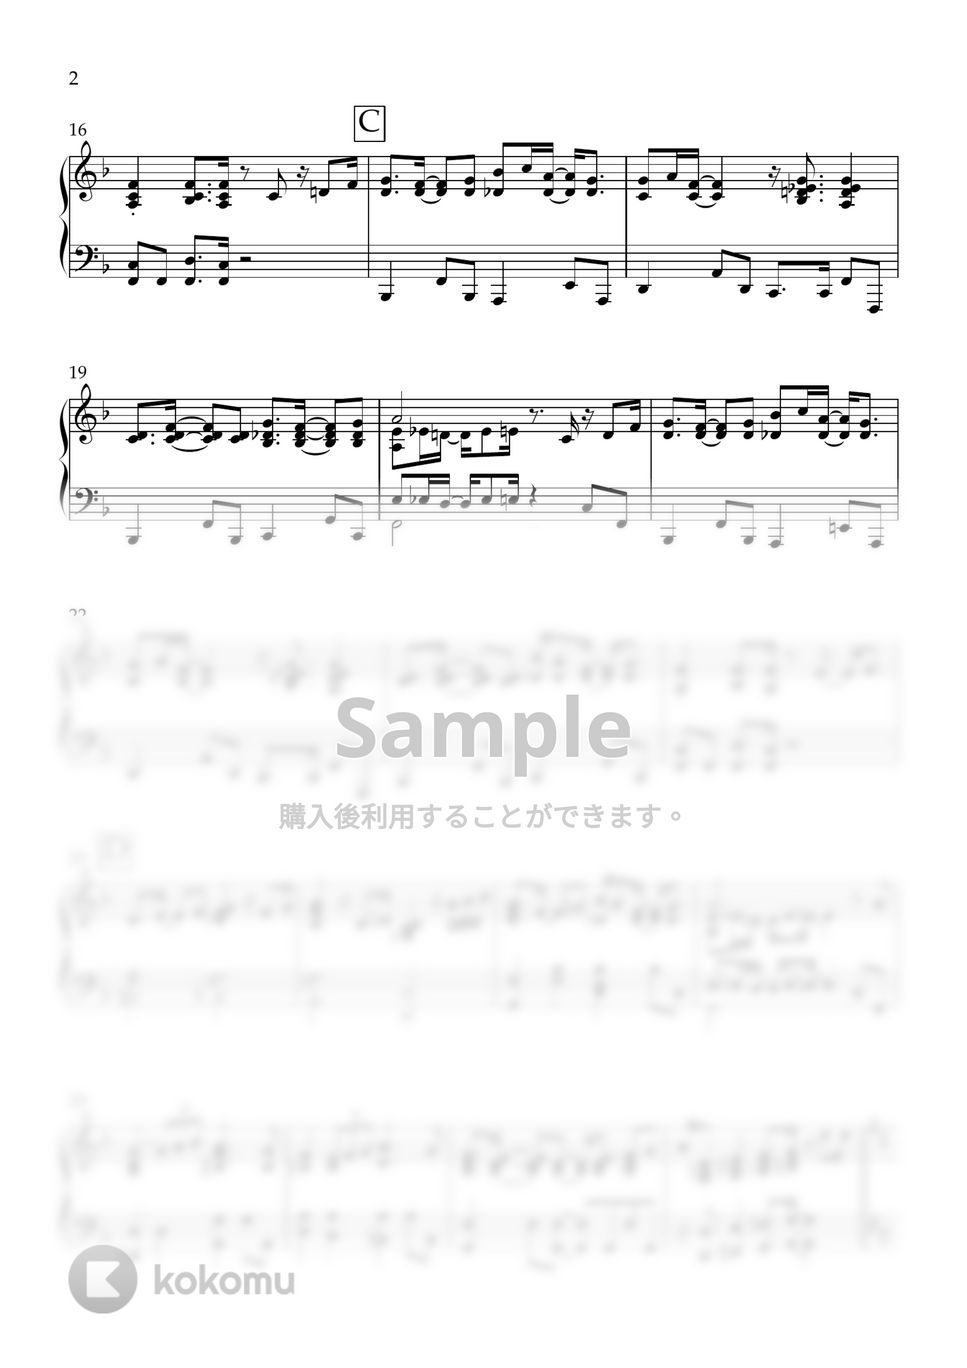 和泉宏隆(T-Square) - 宝島 (ピアノソロ) by Ajuma Piano